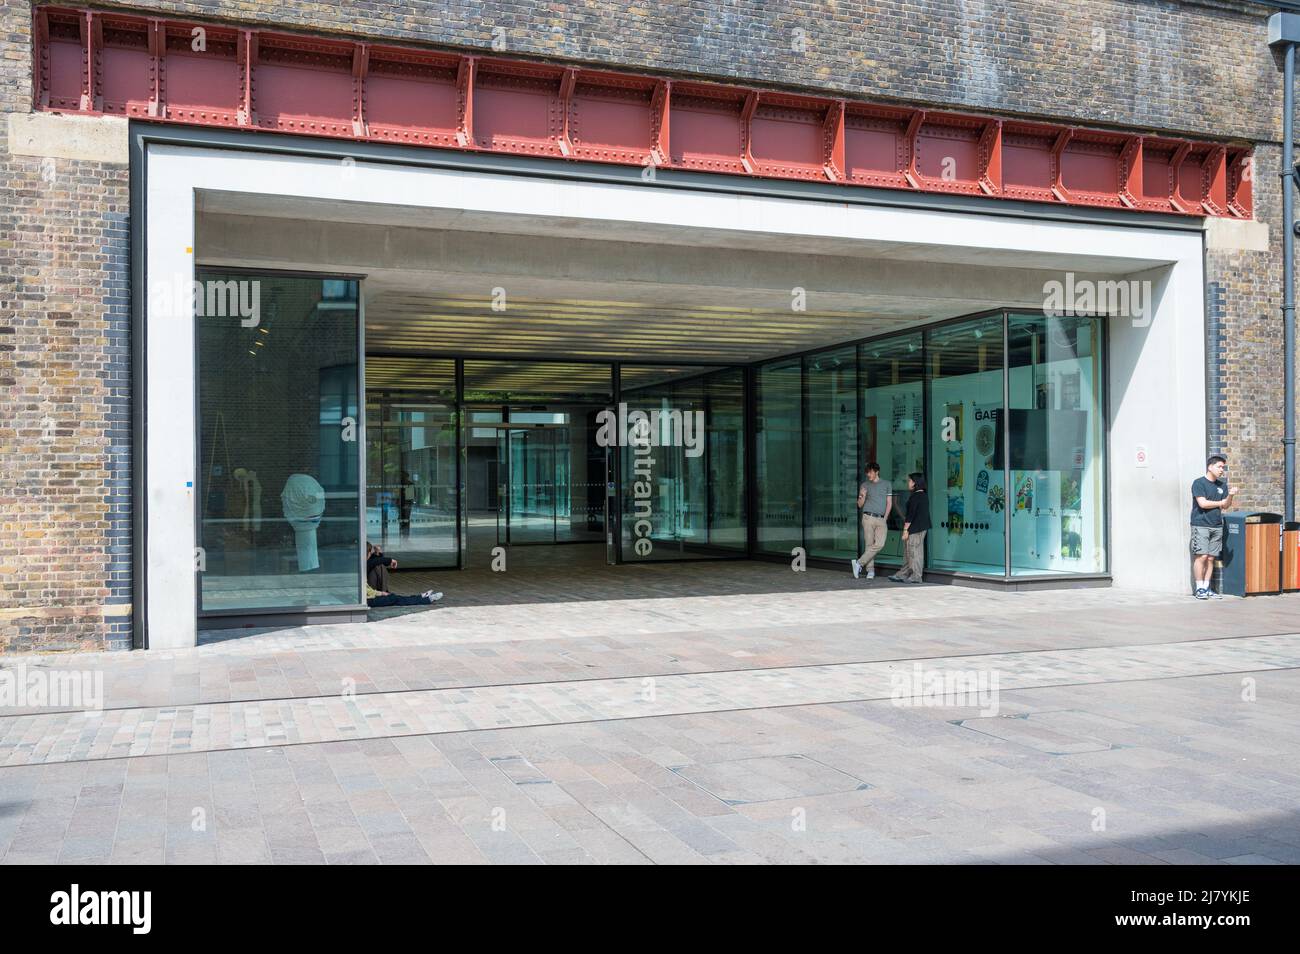 Entrée de l'école d'art Central St Martins à Granary Square, Londres, Angleterre, Royaume-Uni. Banque D'Images